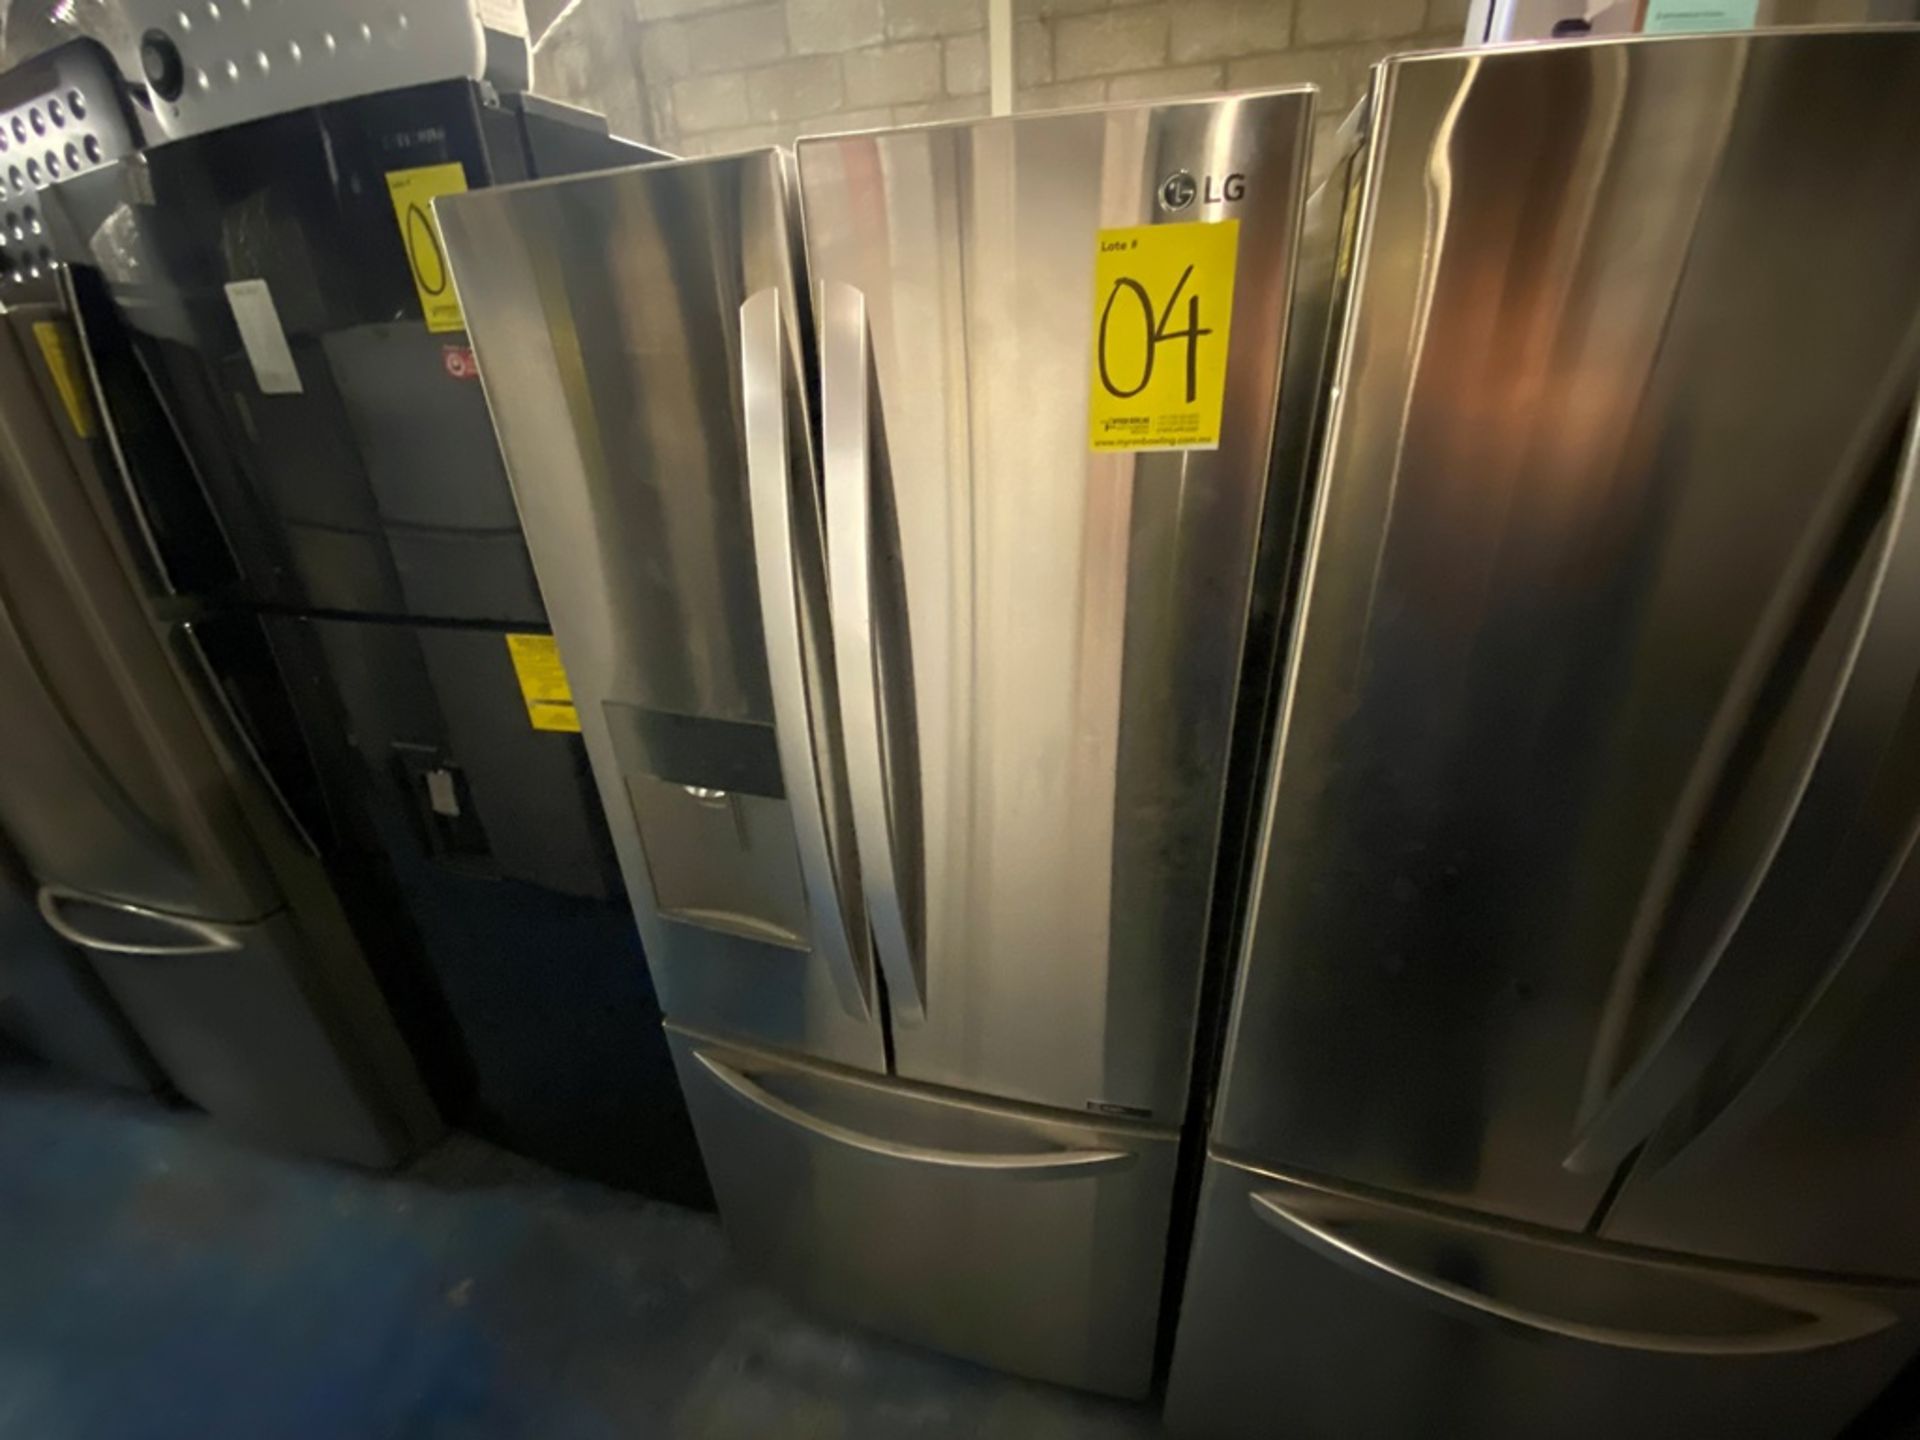 Refrigerador marca LG Modelo GF22WGS Serie 001MRJF1G596, color gris, favor de inspeccionar